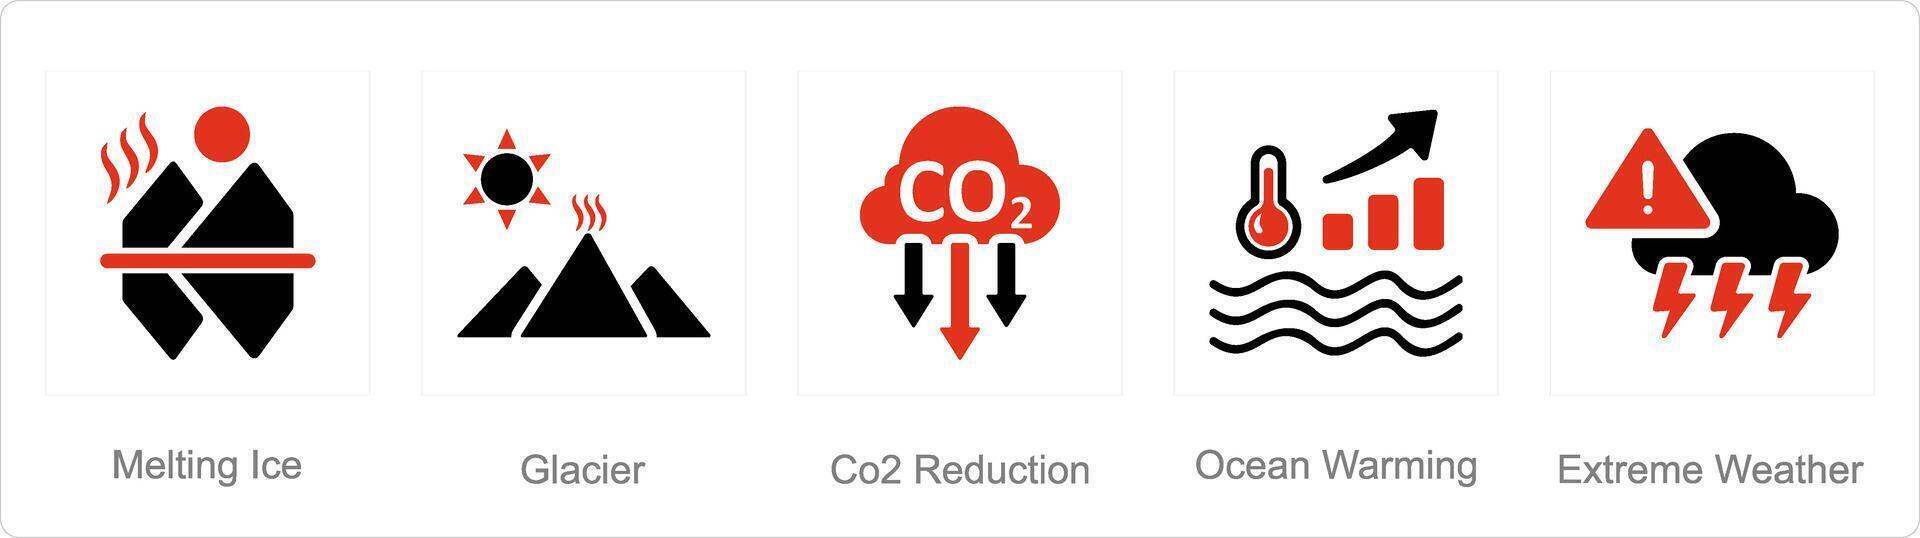 un' impostato di 5 clima modificare icone come fusione Ghiaccio, ghiacciaio, co2 riduzione vettore